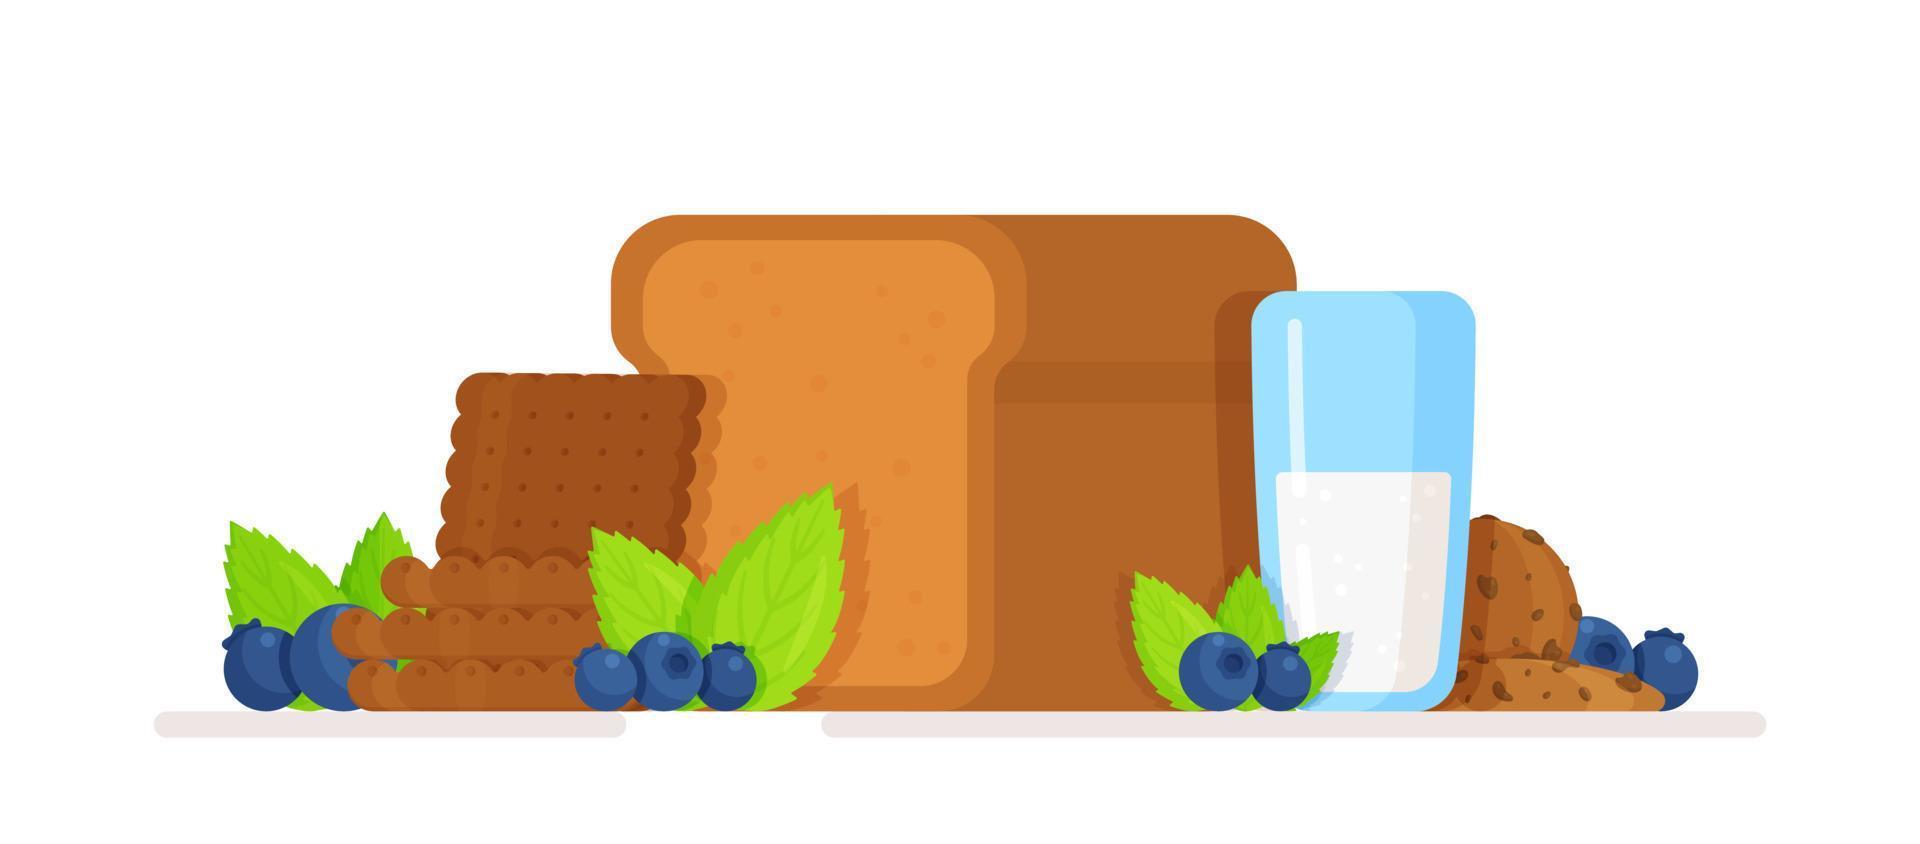 ilustração em vetor de pão doce. conceito de pão doce e leite, frutas e biscoitos.